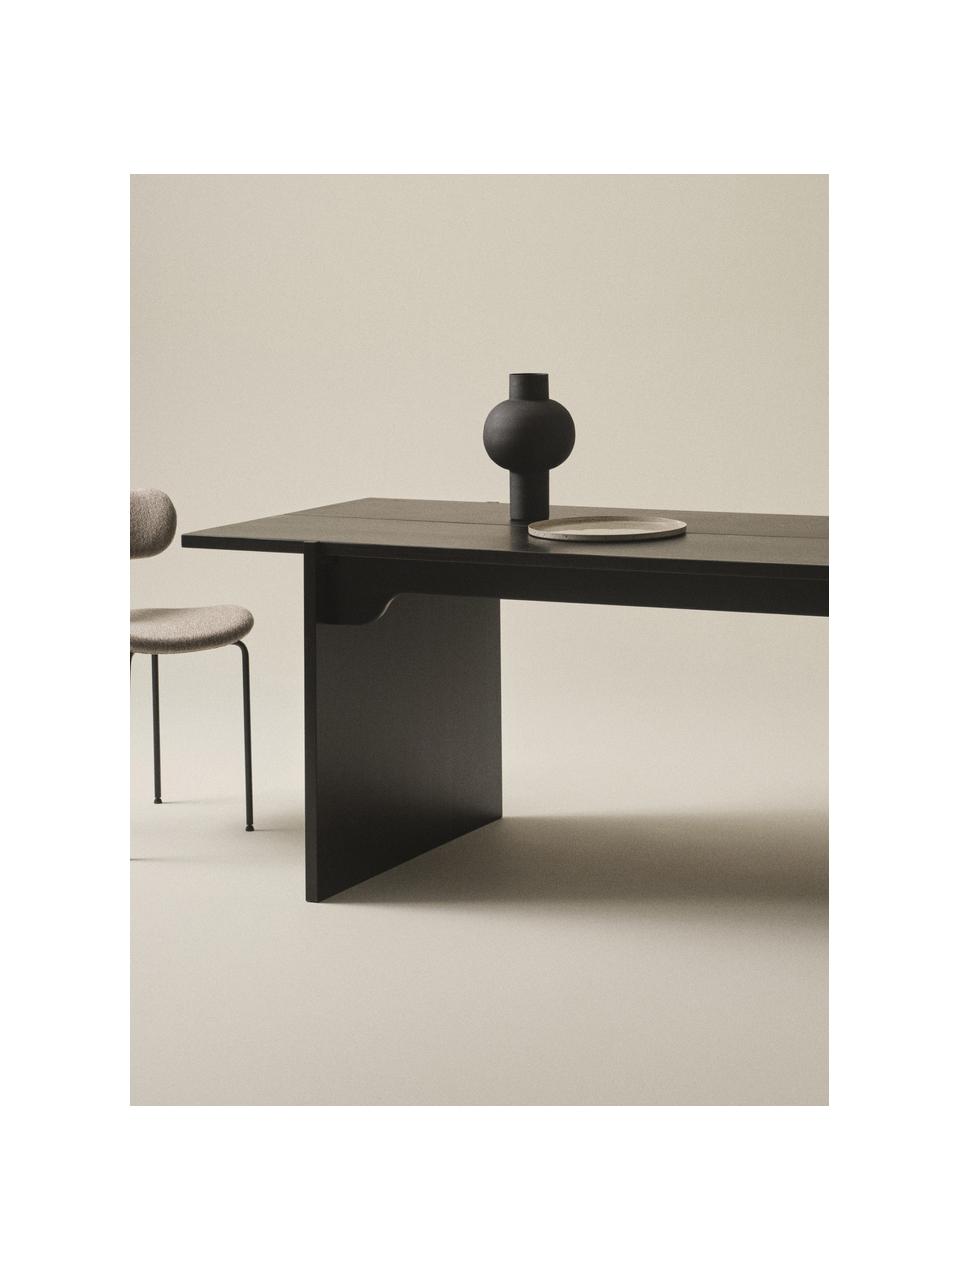 Jídelní stůl z borovicového dřeva Tottori, 250 x 84 cm, Borovicové dřevo, Borovicové dřevo, černě lakované, Š 250 cm, H 84 cm